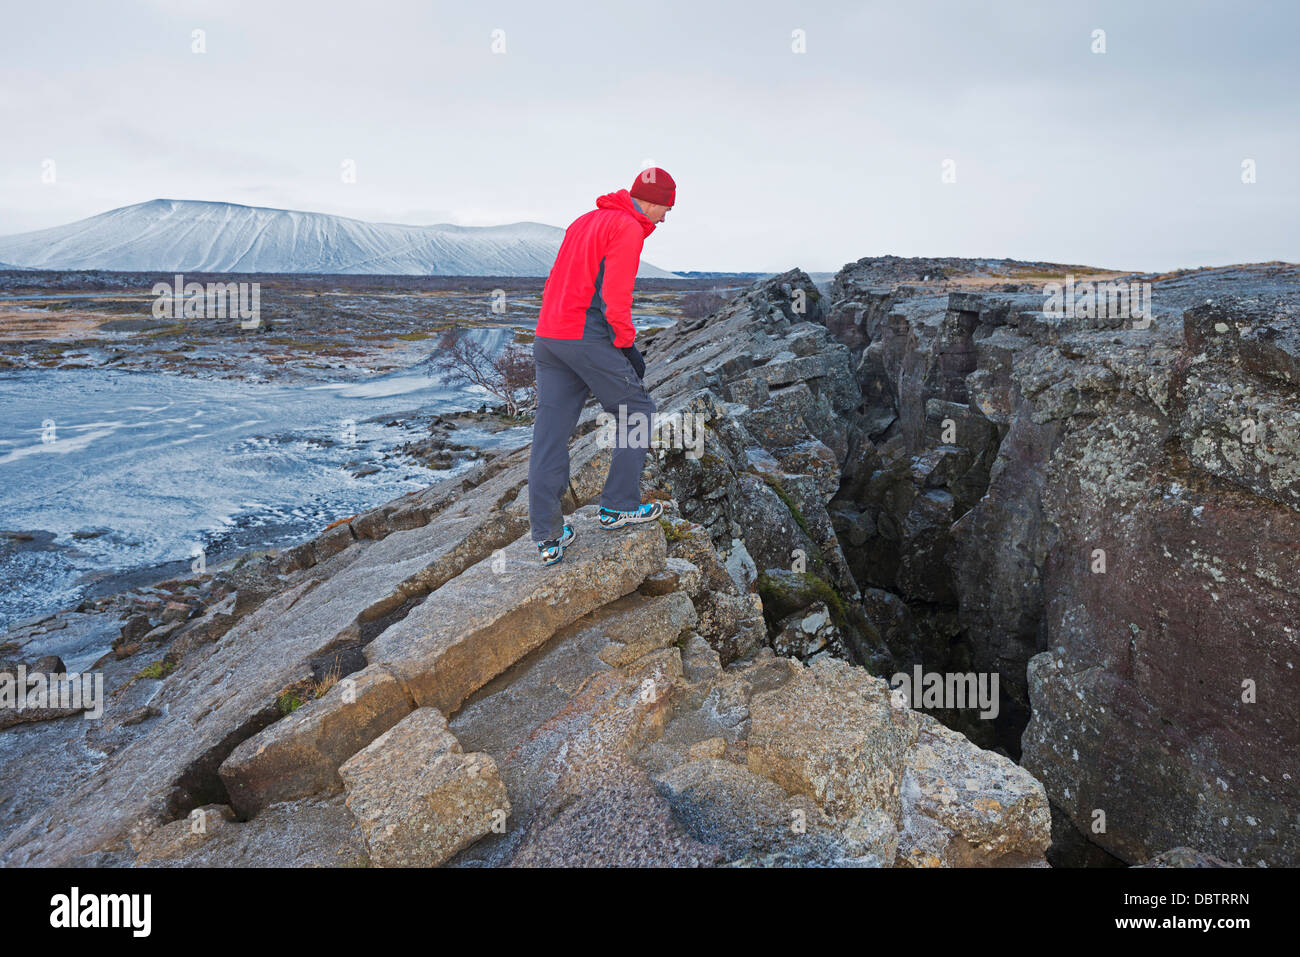 Zona polare immagini e fotografie stock ad alta risoluzione - Alamy